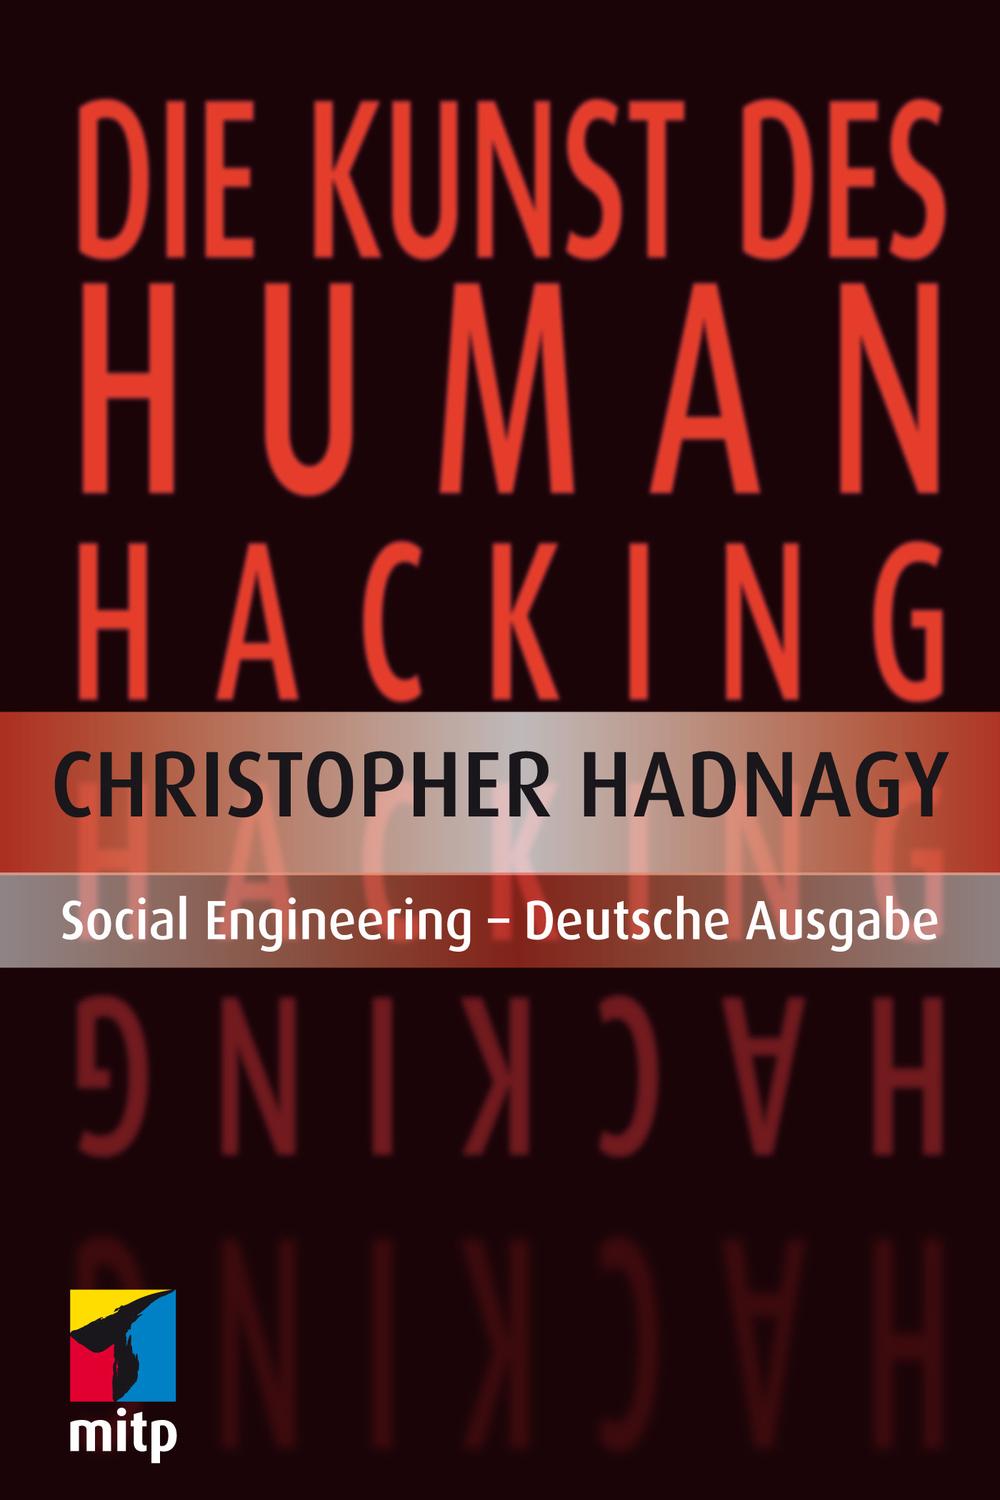 Die Kunst des Human Hacking - Christopher Hadnagy